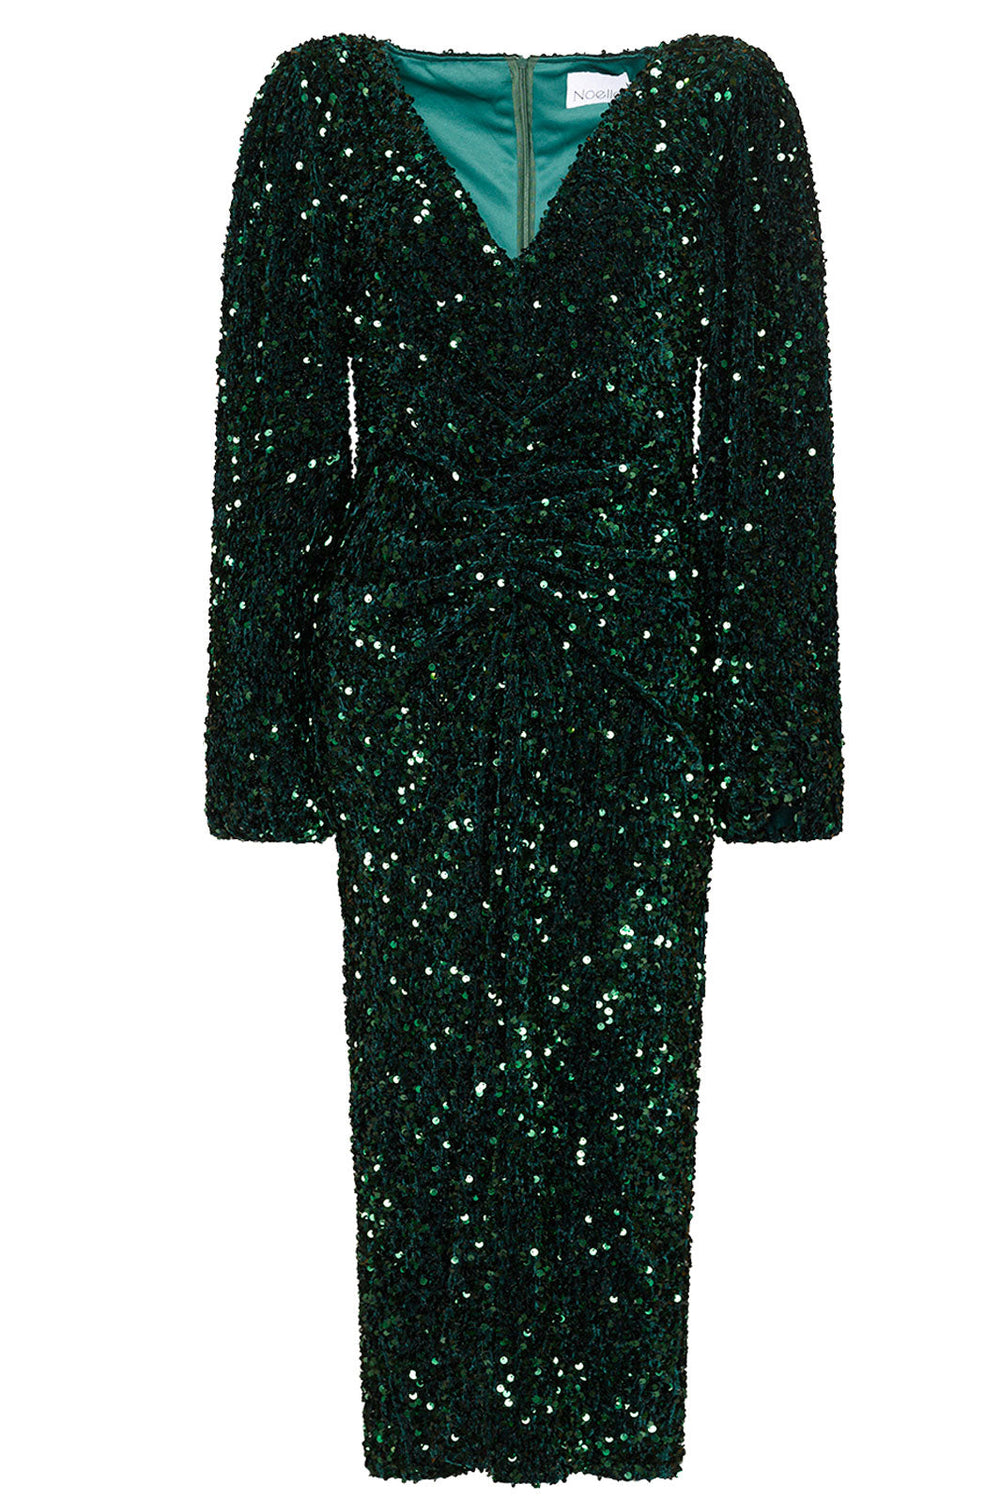 Noella - Teagan Lg. Dress - Green Kjoler 